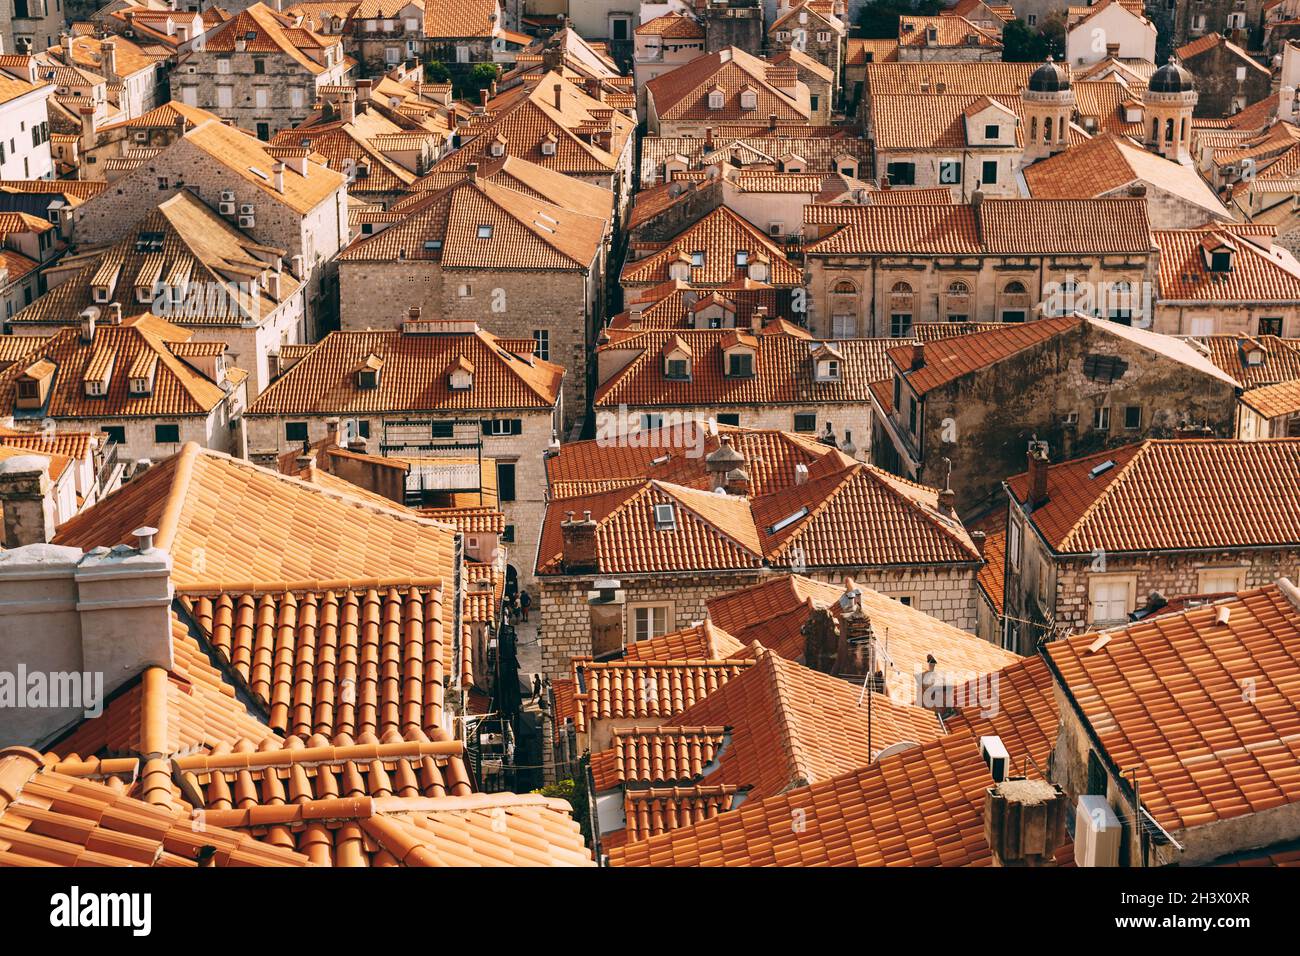 Vue depuis le mur sur les toits de tuiles de la vieille ville de Dubrovnik. Banque D'Images